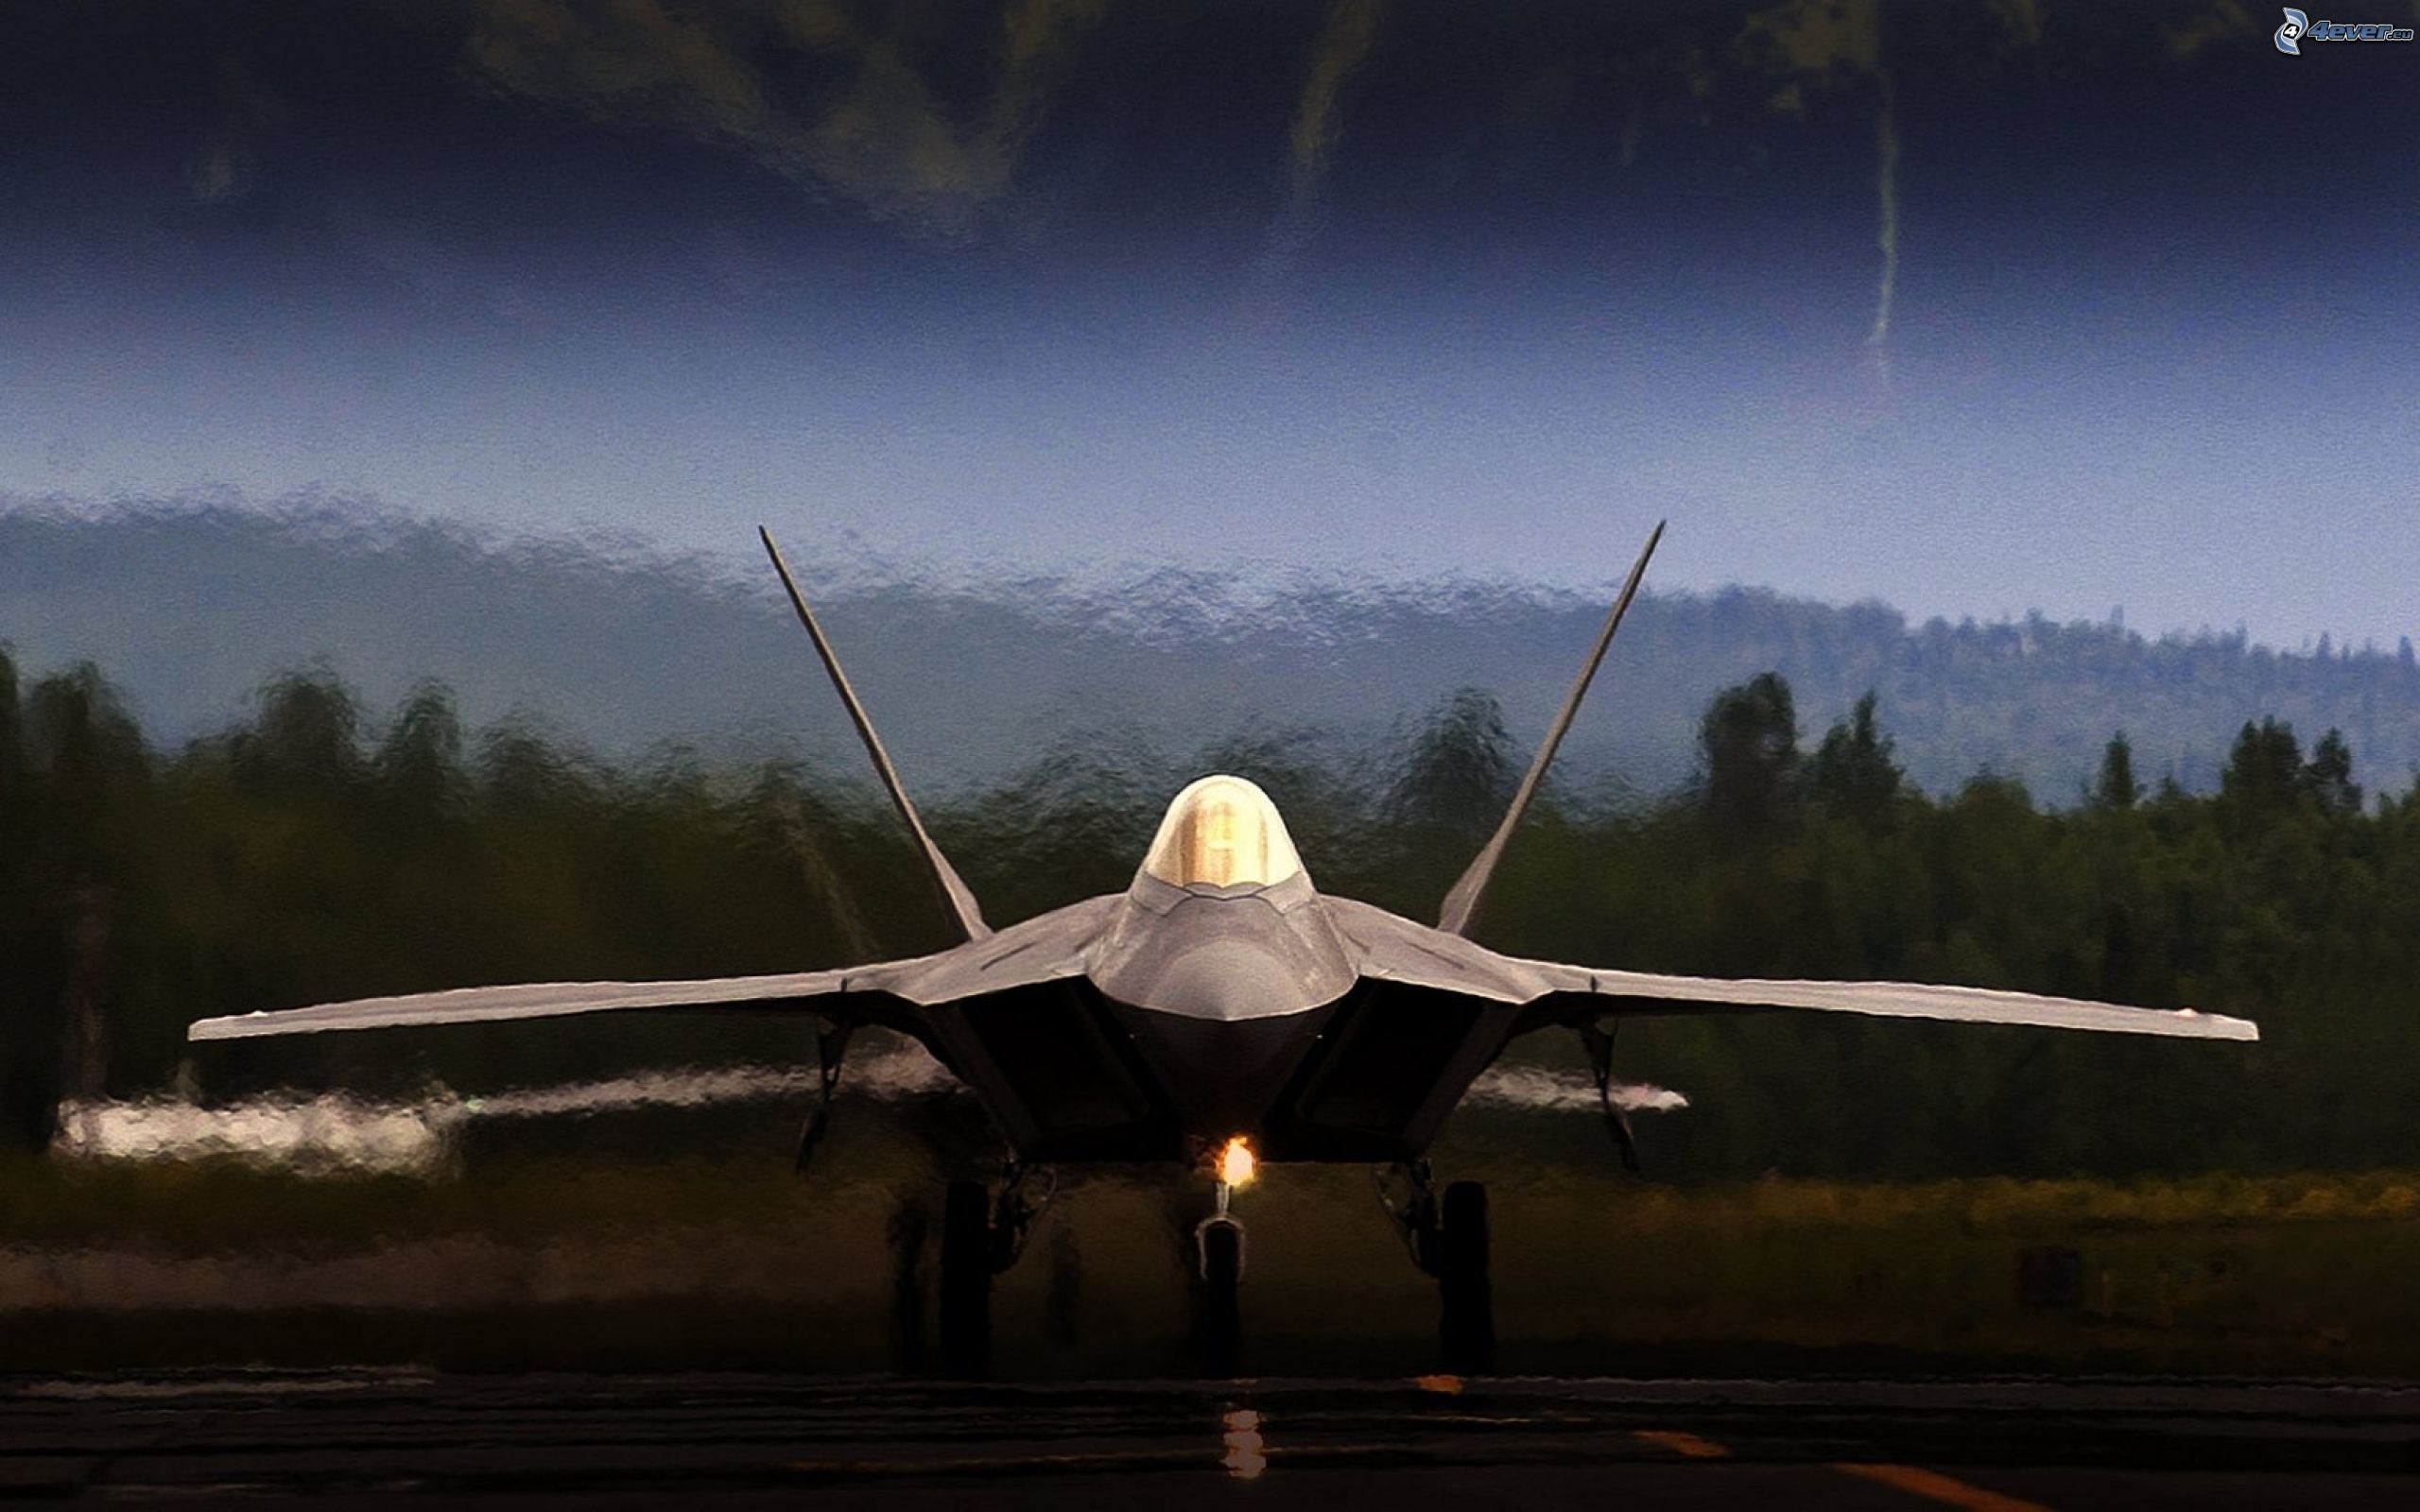 giới chuyên môn coi tiêm kích F-22 Raptor là kỳ quan quốc phòng của Mỹ 